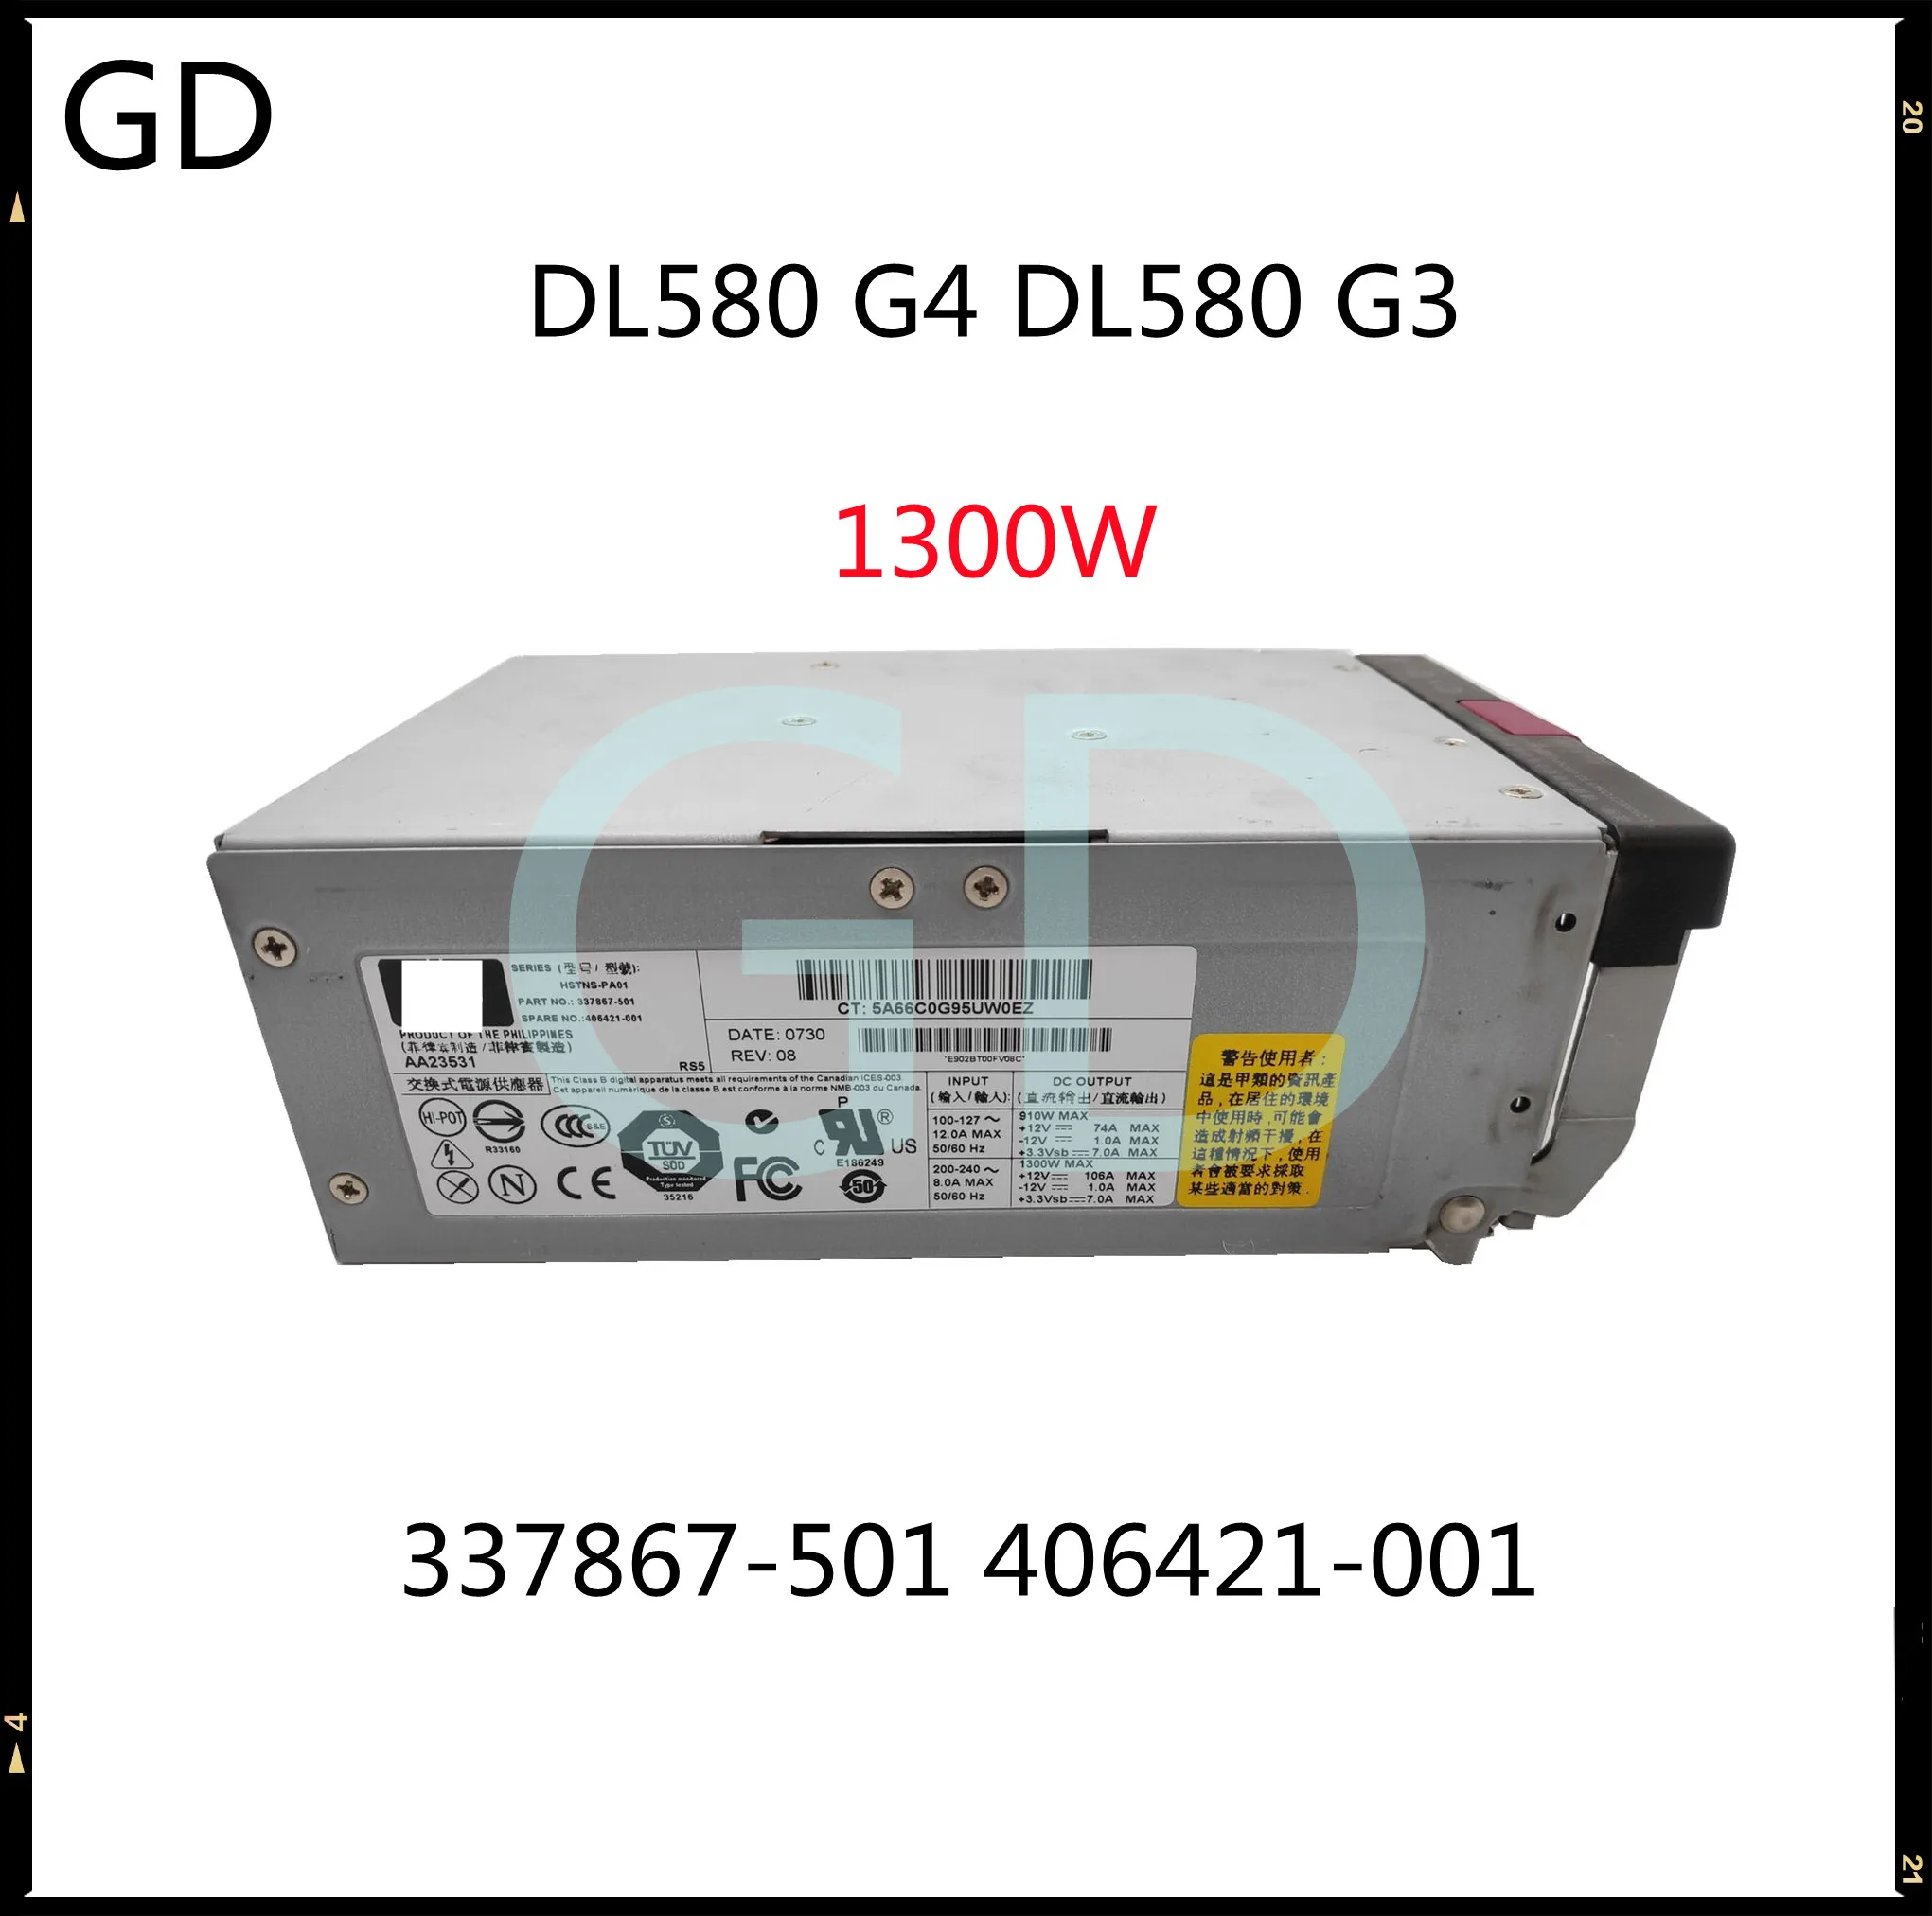 GD оригинал для HP DL580 G4 G3 1300 Вт источник питания HSTNS-PA01 337867-501 406421-001 полностью